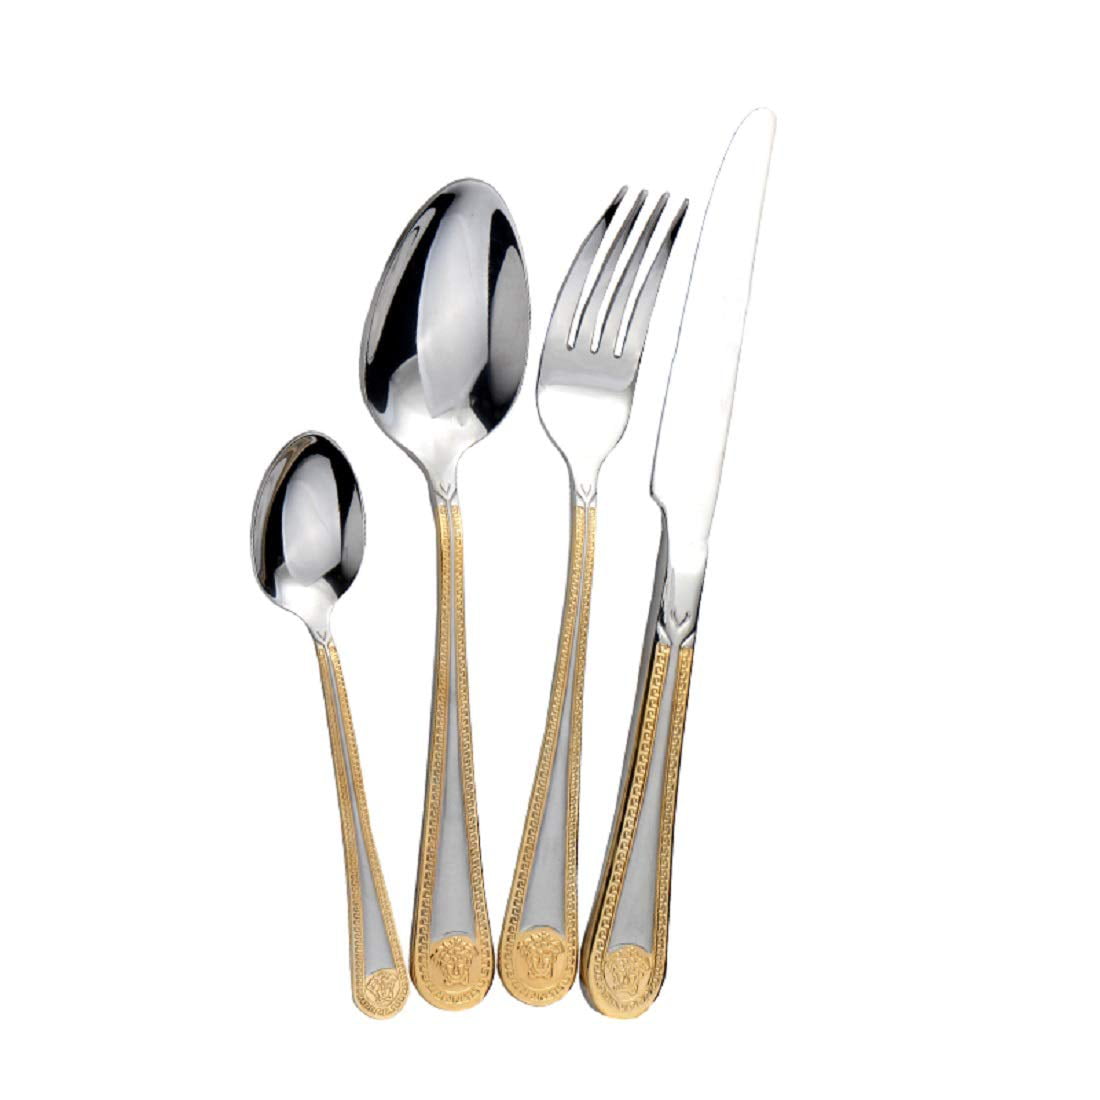 Lotte Luxury Matte GOLD White Cutlery Set Spoon Fork Knife - 18